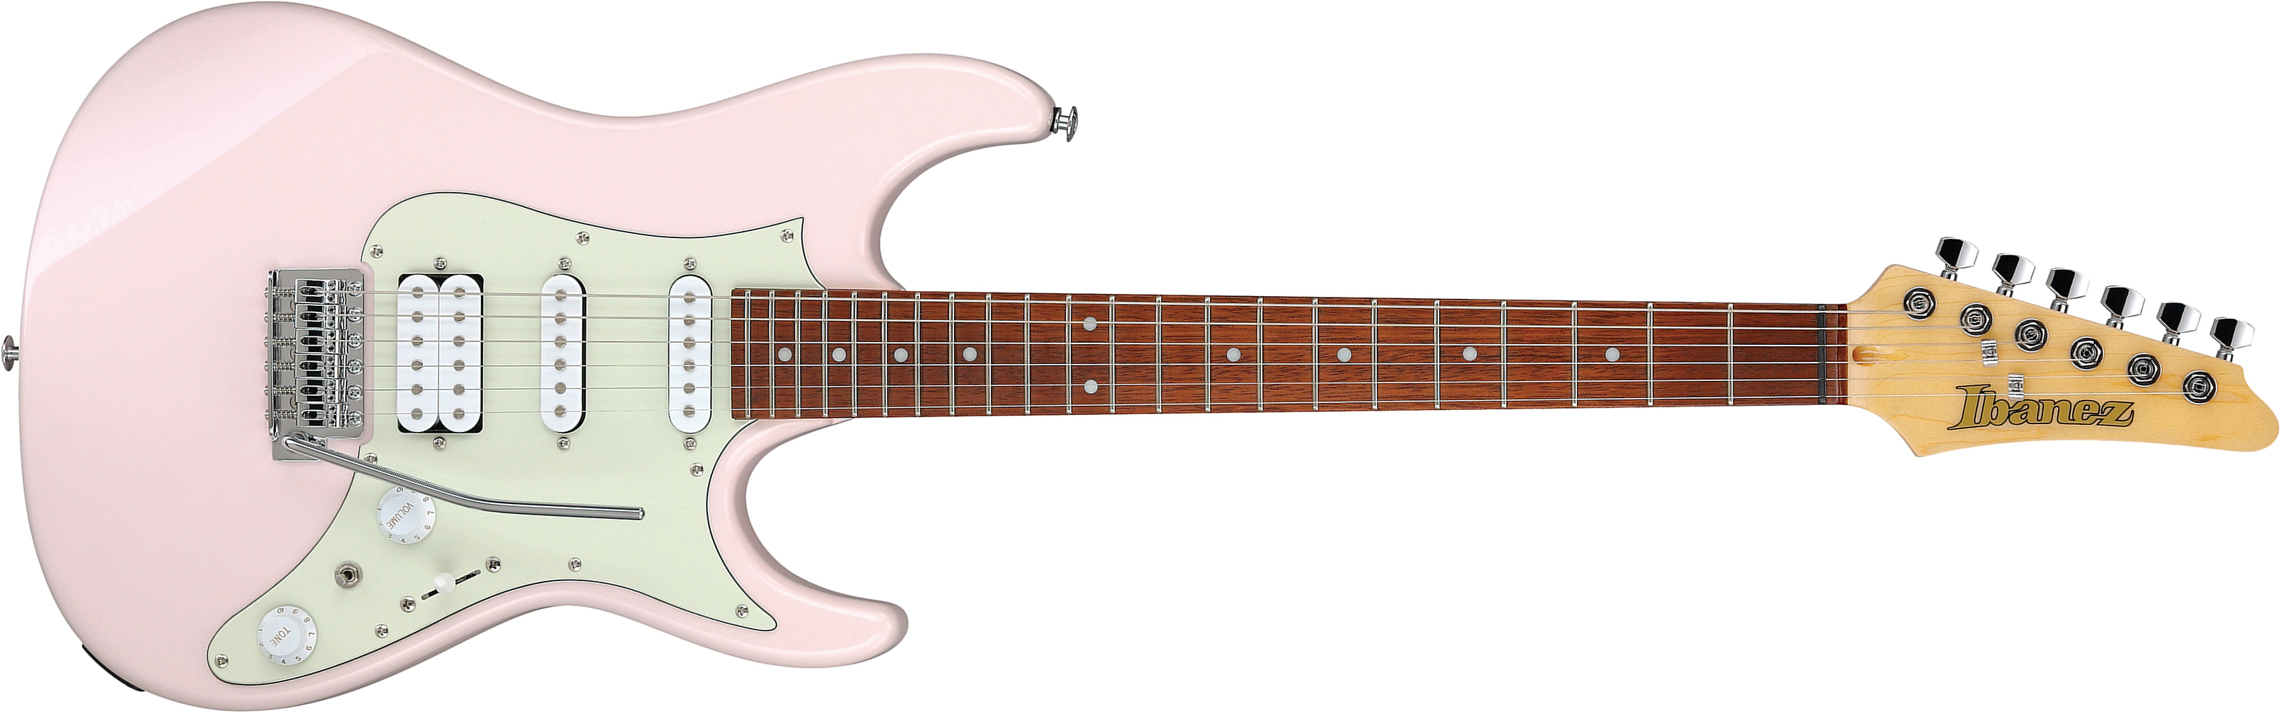 Ibanez Azes40 Ppk Standard Hss Trem Jat - Pastel Pink - E-Gitarre in Str-Form - Main picture